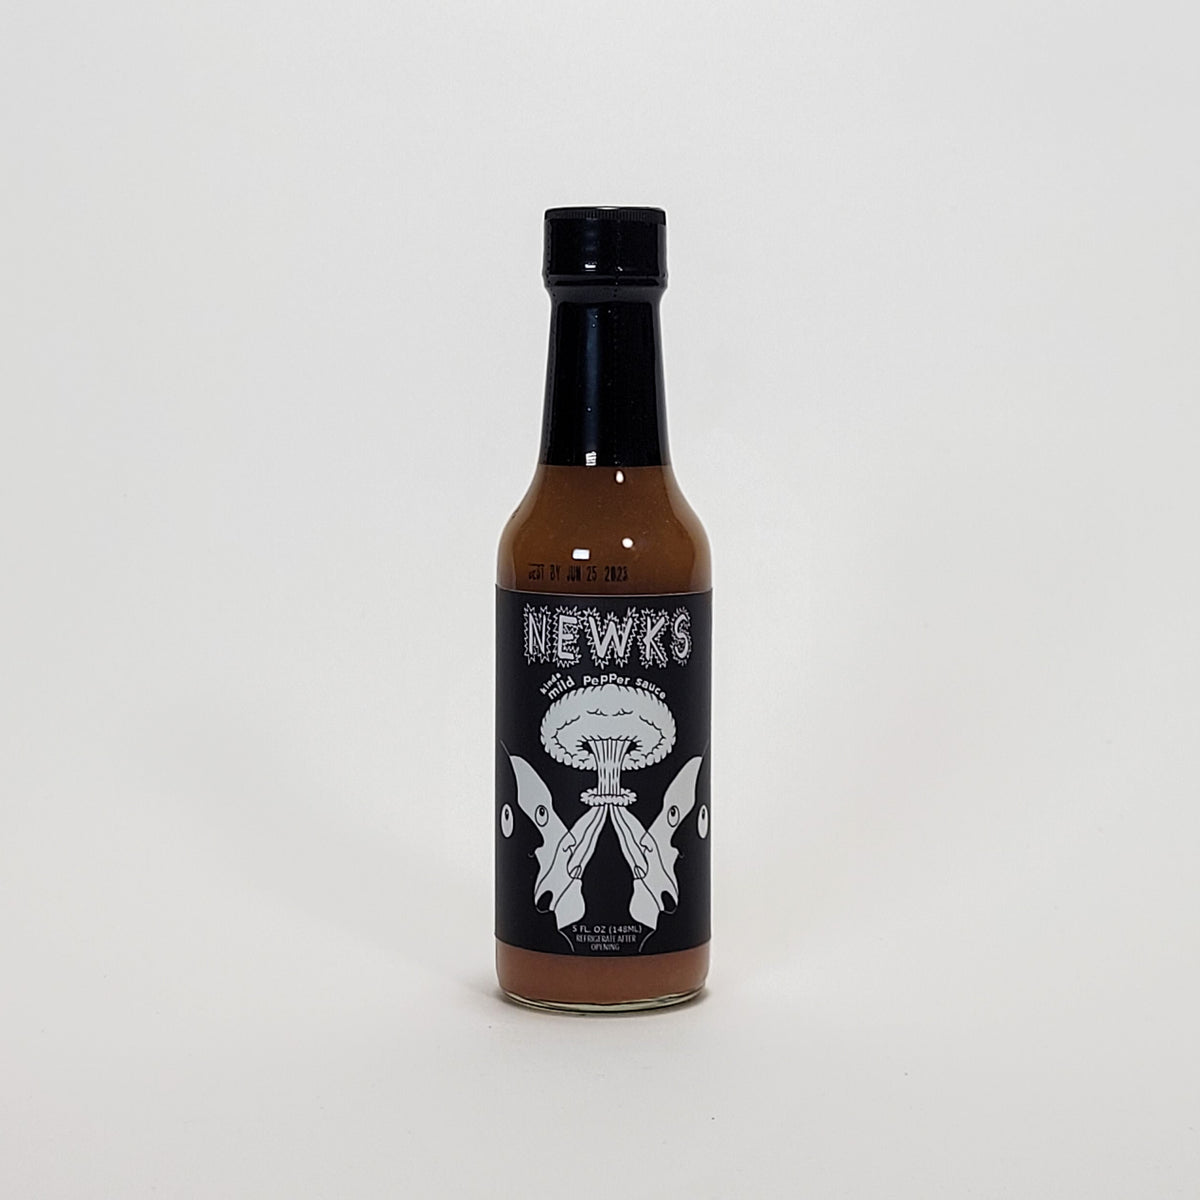 Newks Mild Pepper Sauce hot sauce